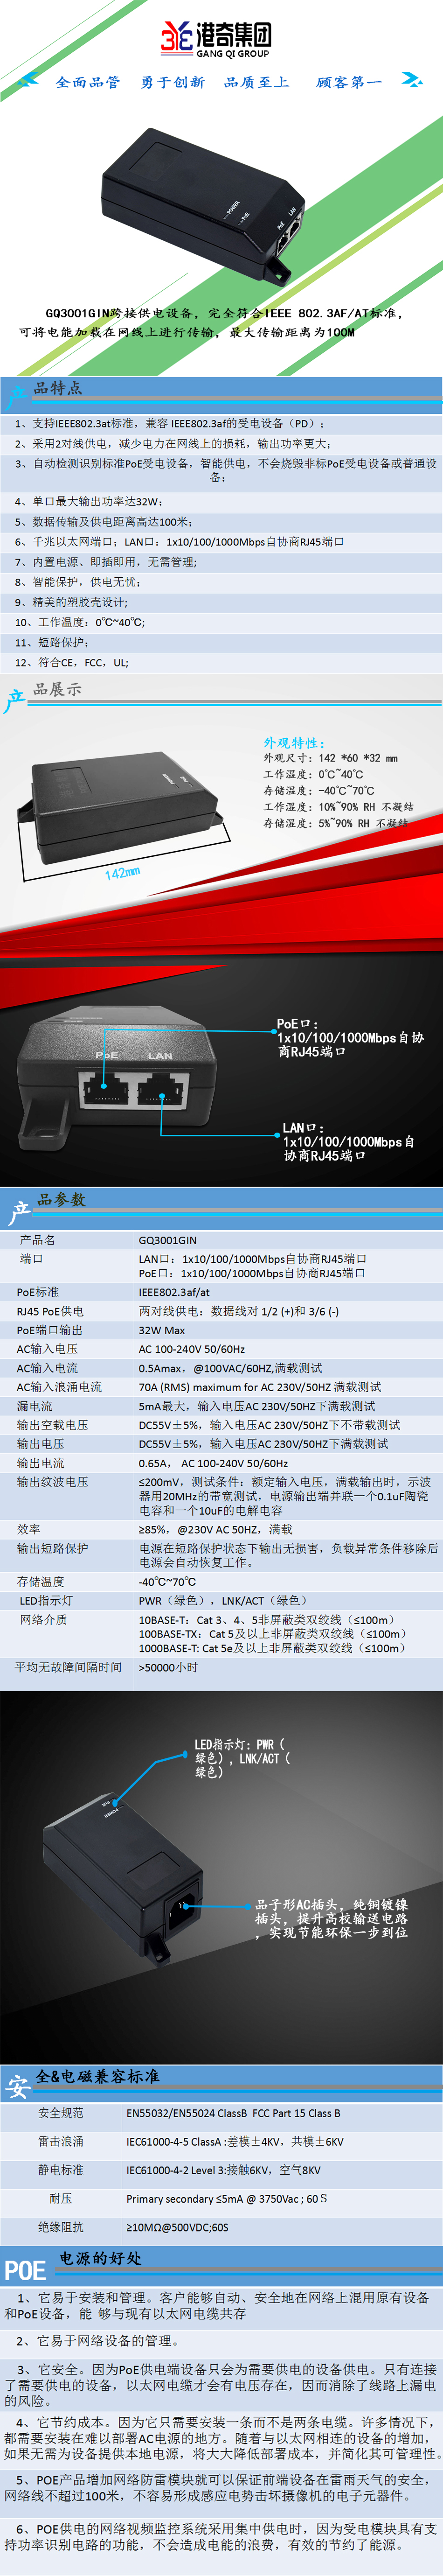 GQ3001GIN30W千兆中跨-中文